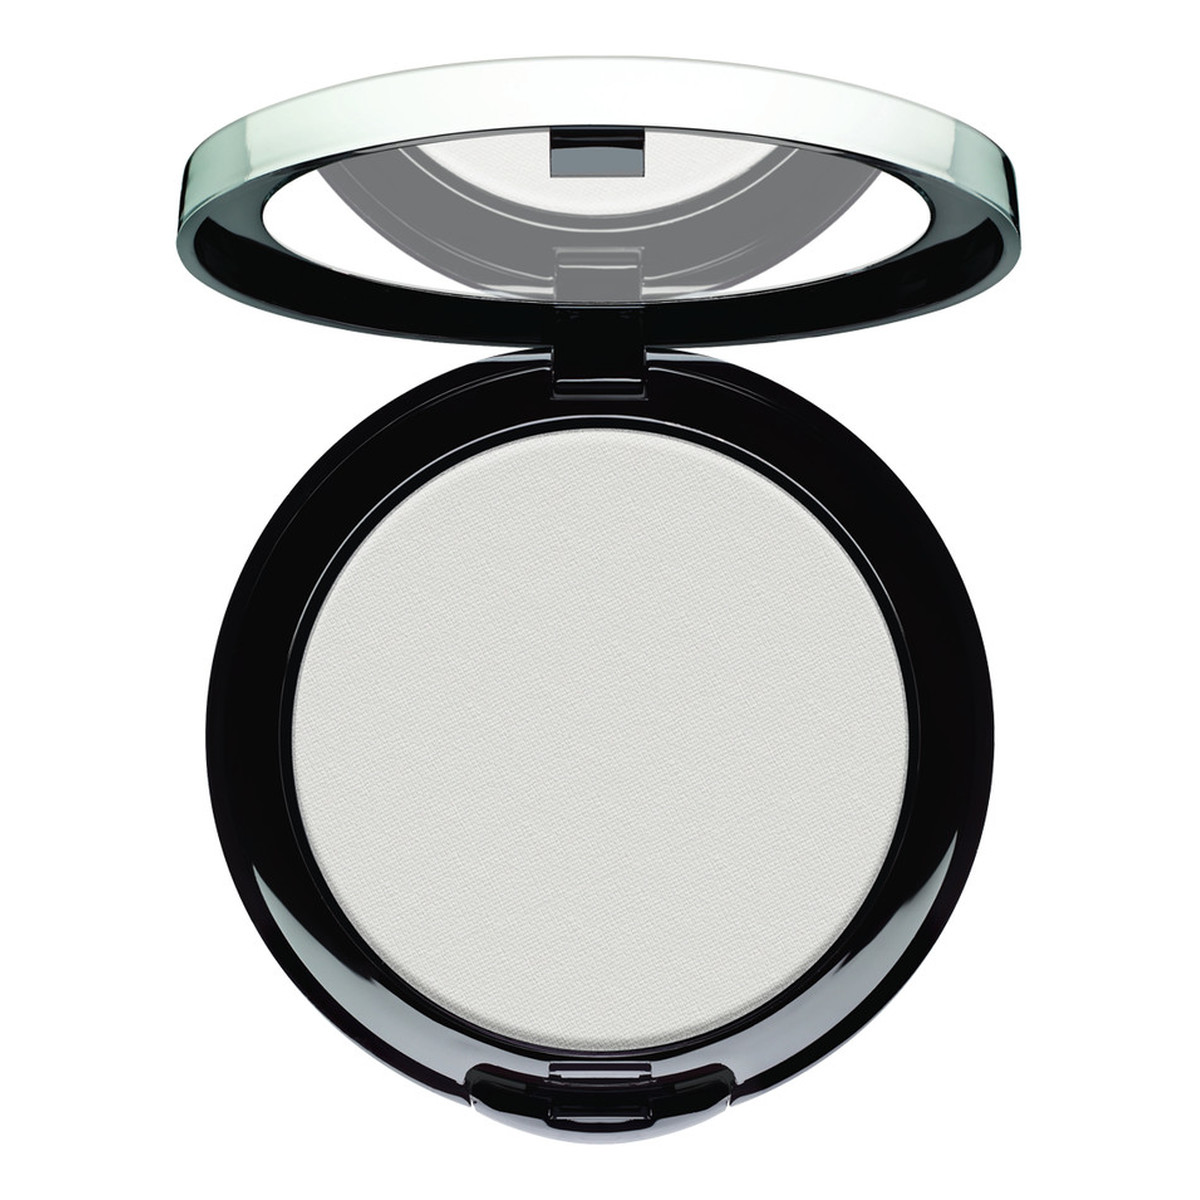 ArtDeco Setting Powder Compact Transparentny puder utrwalający makijaż 7g